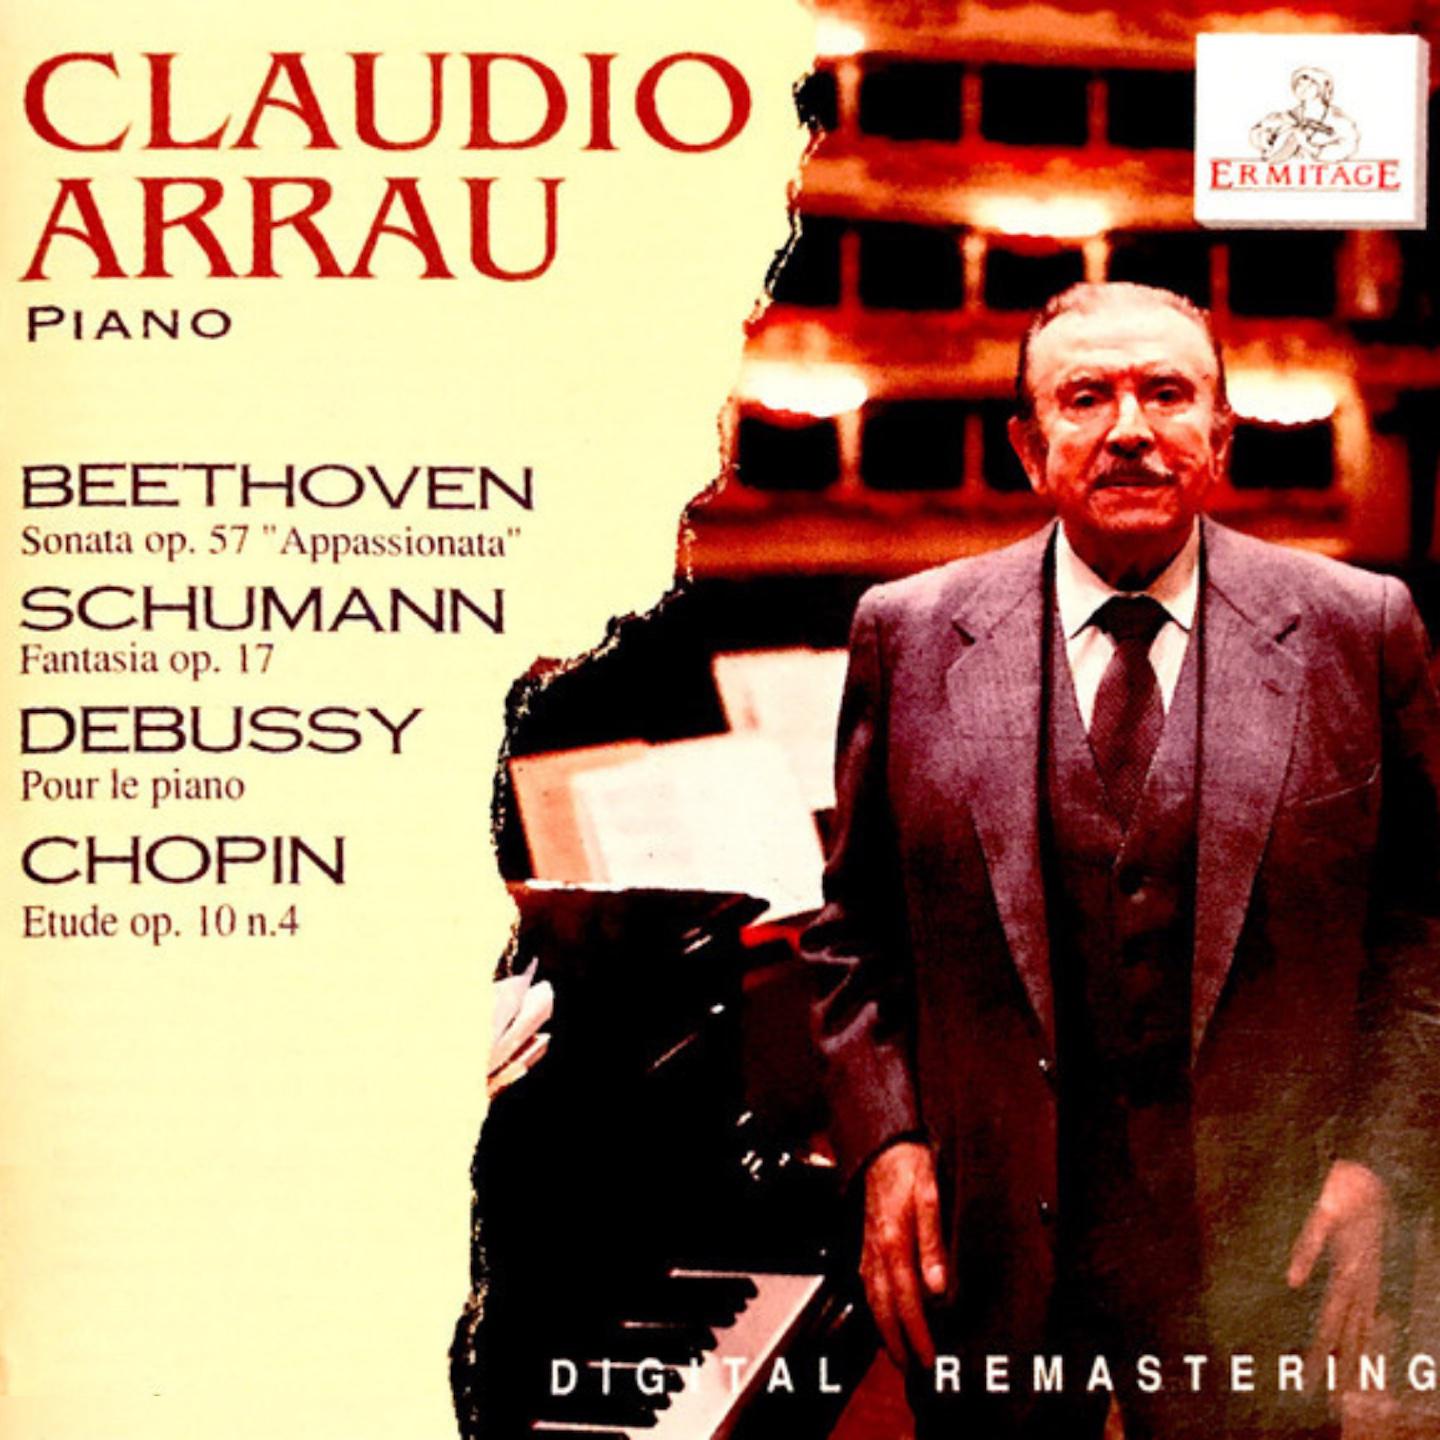 Claudio Arrau - Pour le piano. Suite for the piano:Sarabande (Avec une élégance grave et lente)